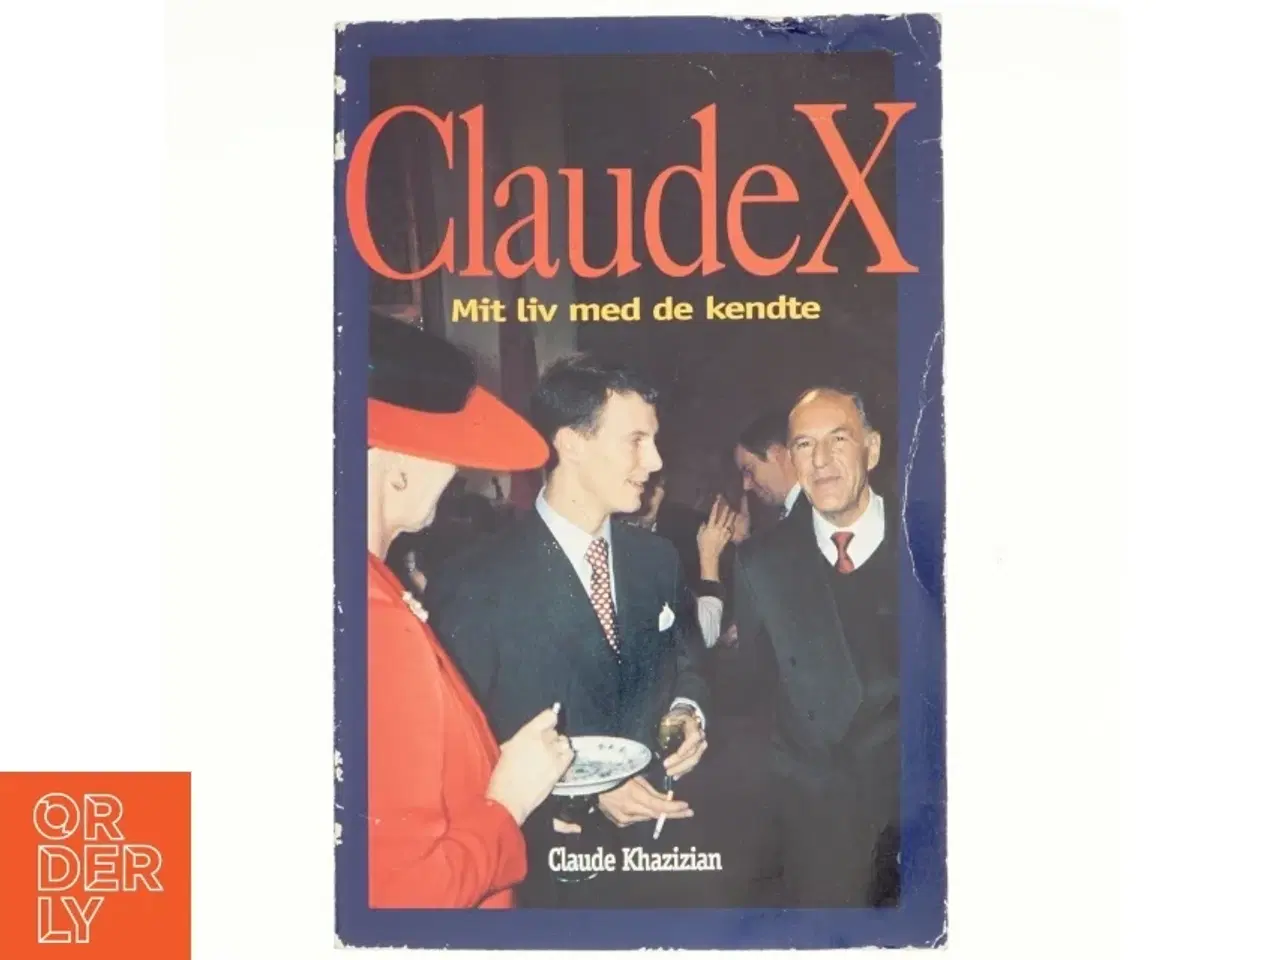 Billede 1 - Claude X : mit liv med de kendte af Claude Khazizian (Bog)